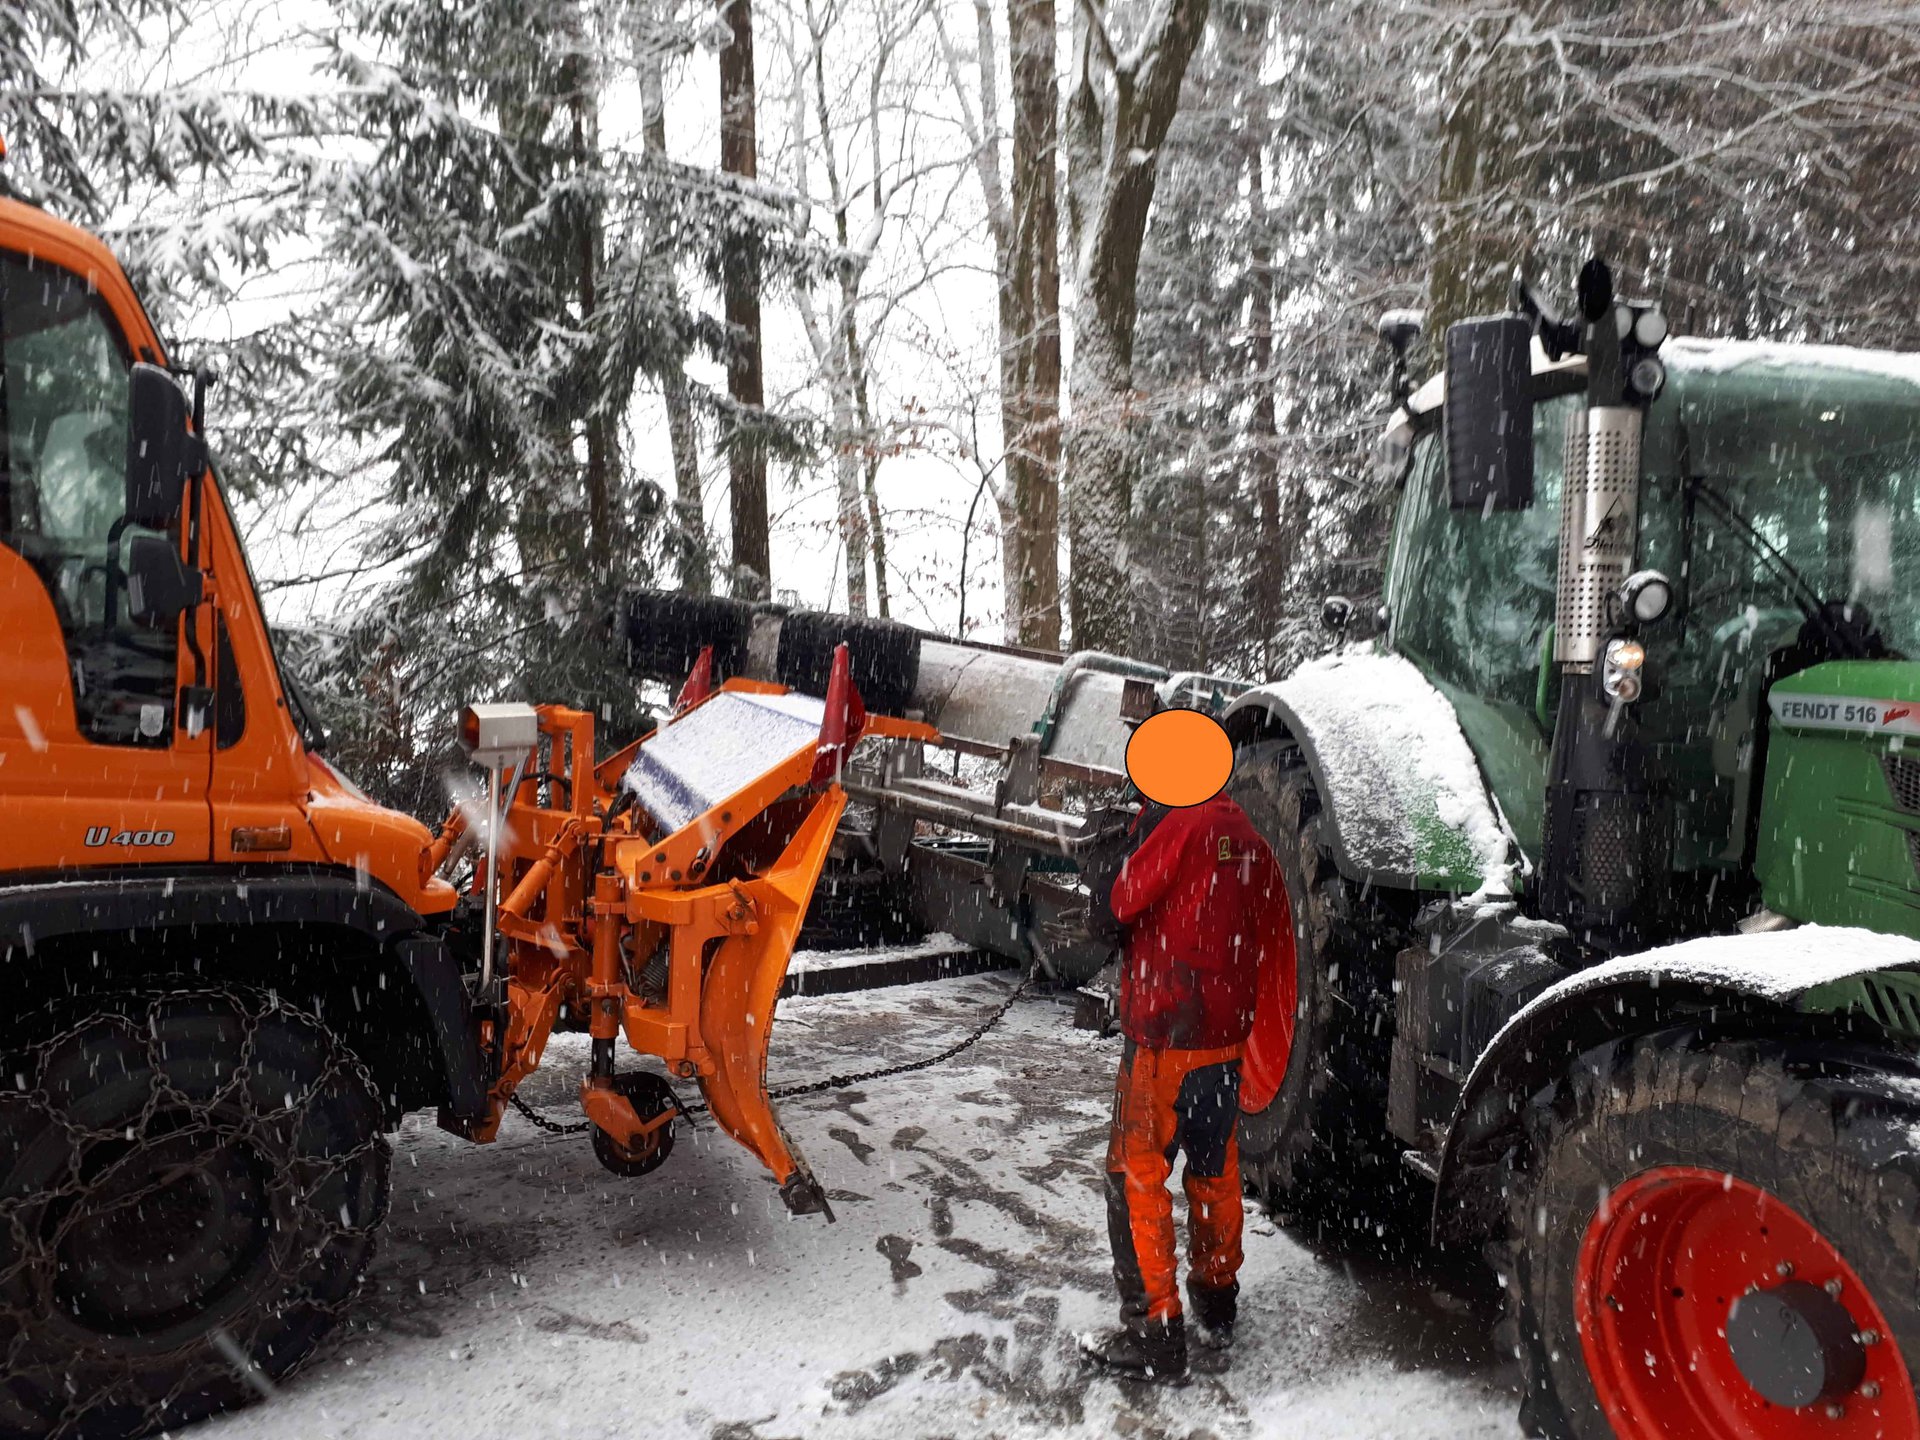 Einsatz_Traktor_Holzanhänger_Fahrzeugbergung-2018-02-03-02